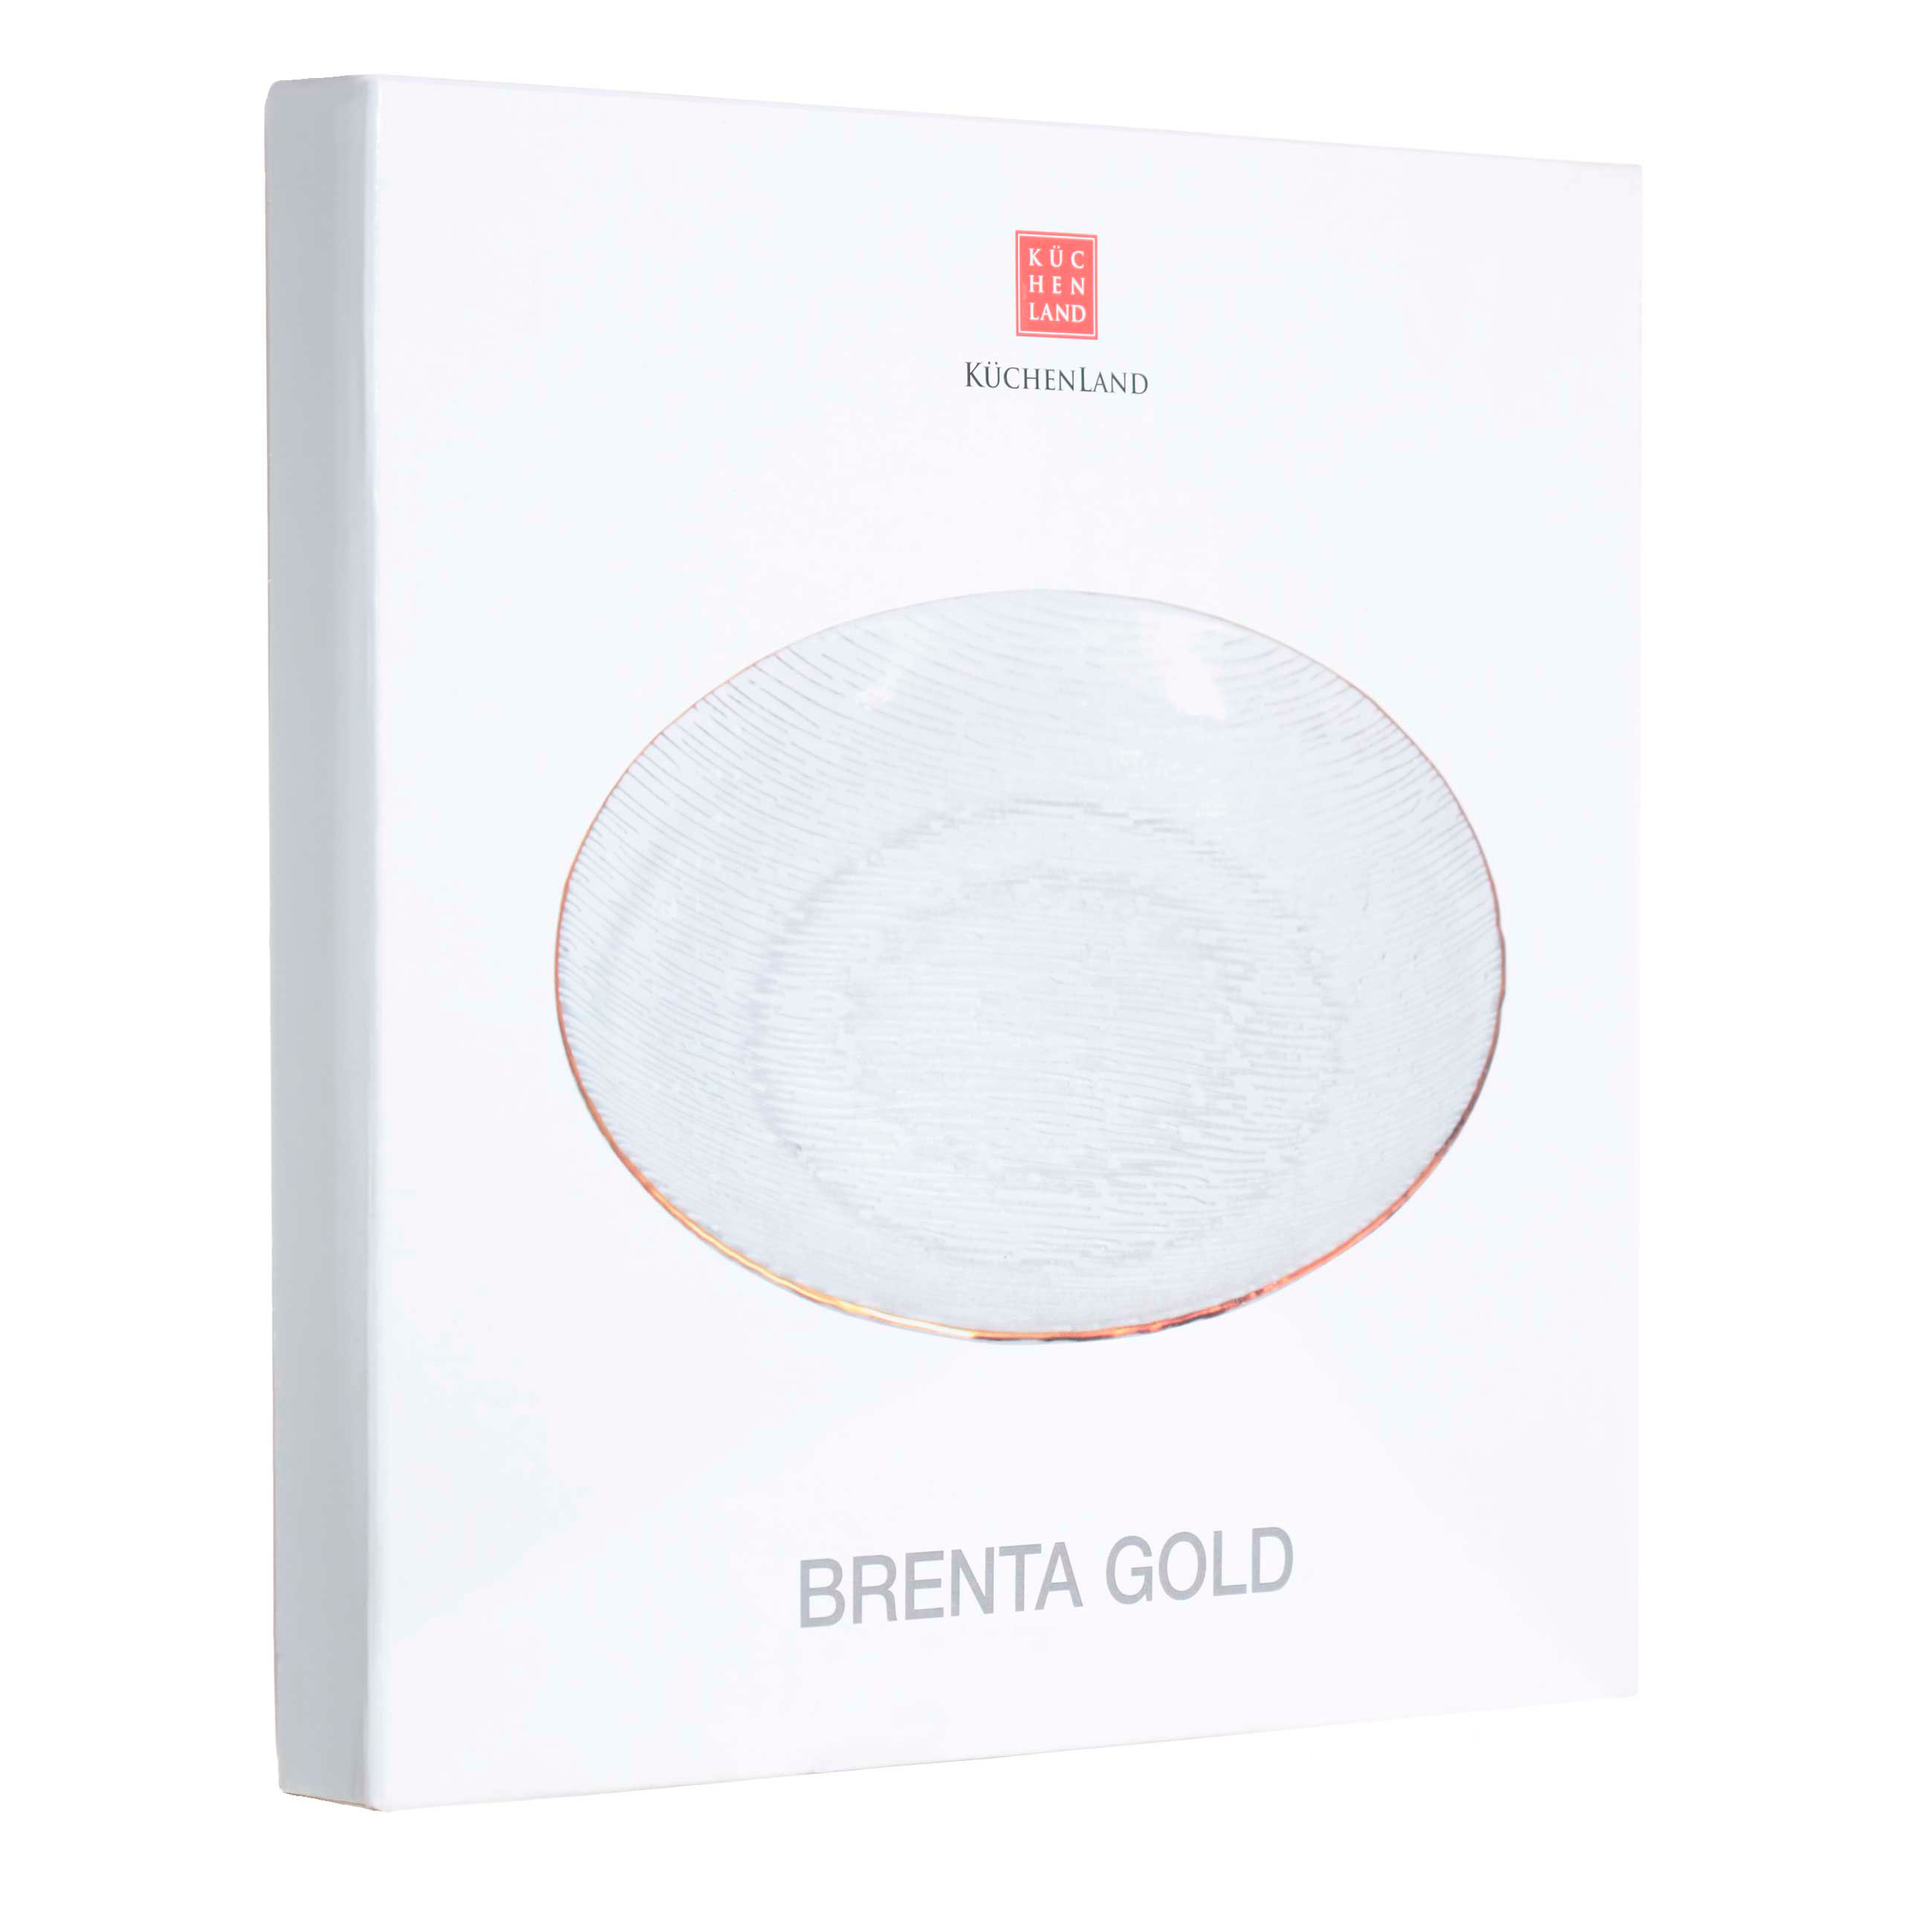 Тарелка десертная, 15 см, стекло, с золотистым кантом, Brenta gold изображение № 3